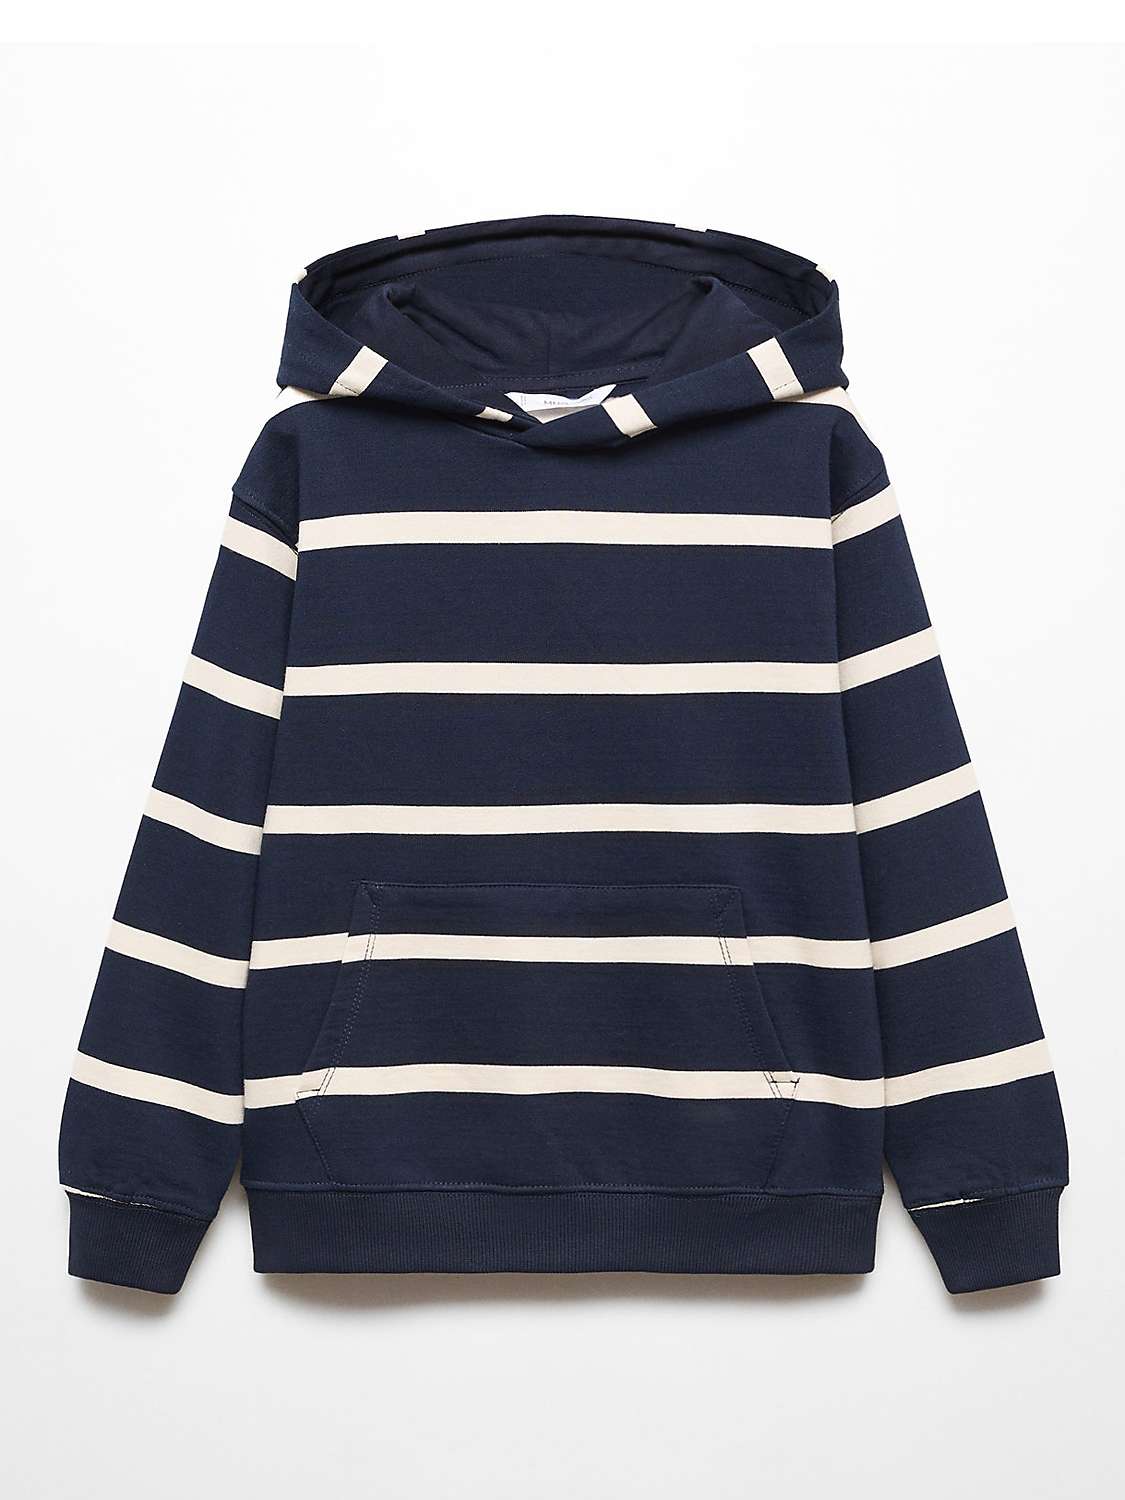 Buy Mango Kids' Sea Striped Hooded Sweatshirt, Navy Online at johnlewis.com